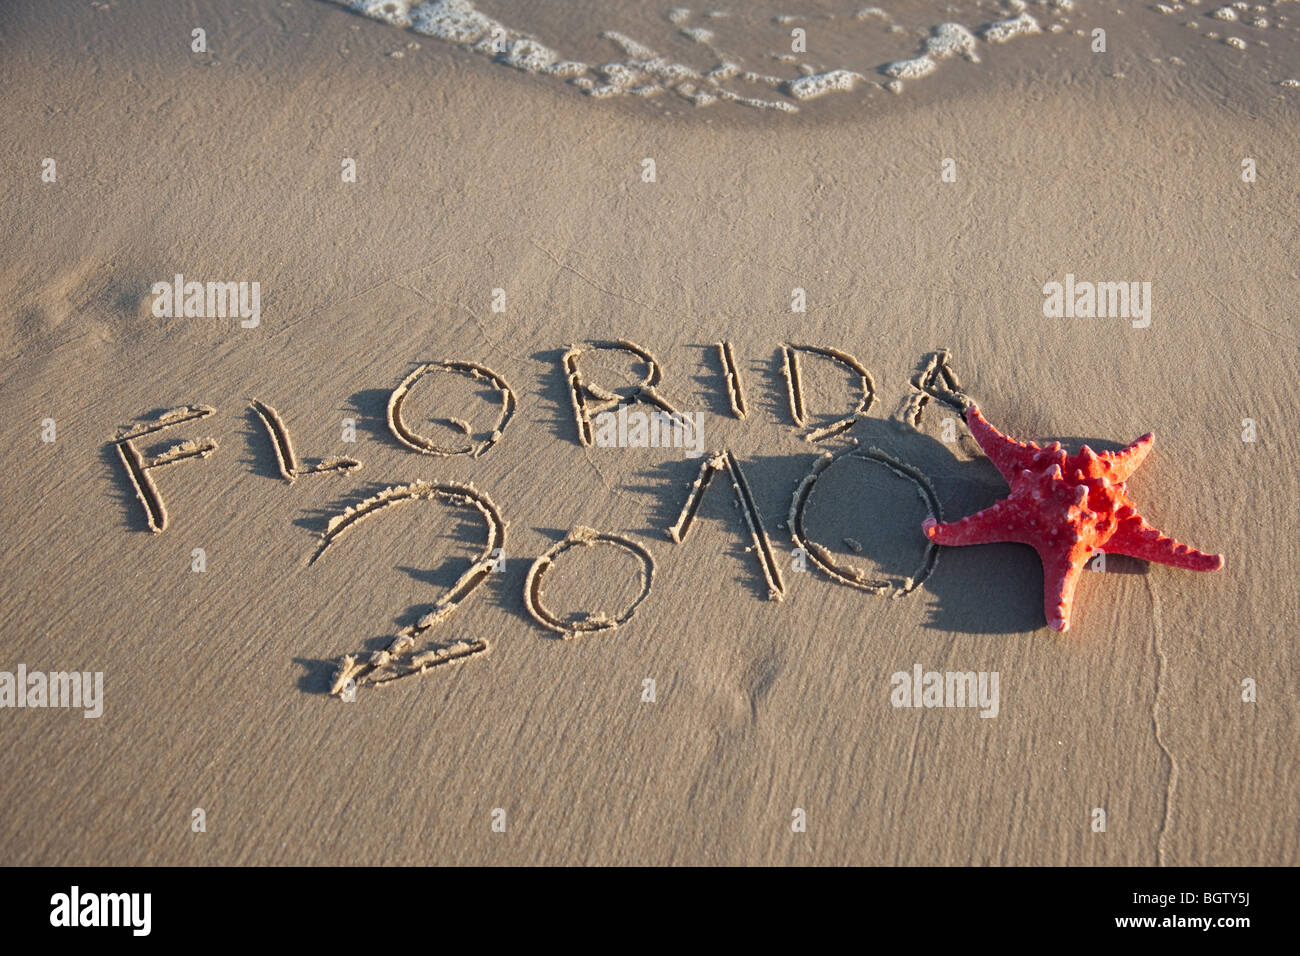 Roter Seestern und Kurztext auf nassen sand Stockfoto